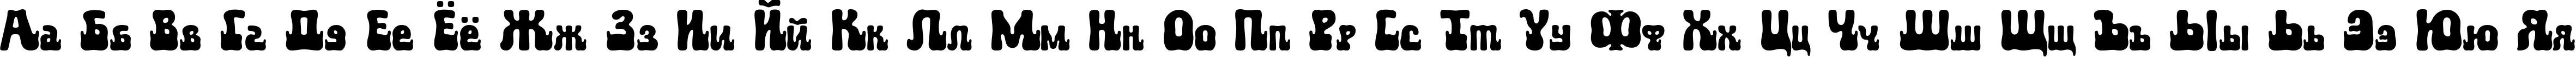 Пример написания русского алфавита шрифтом Aktau